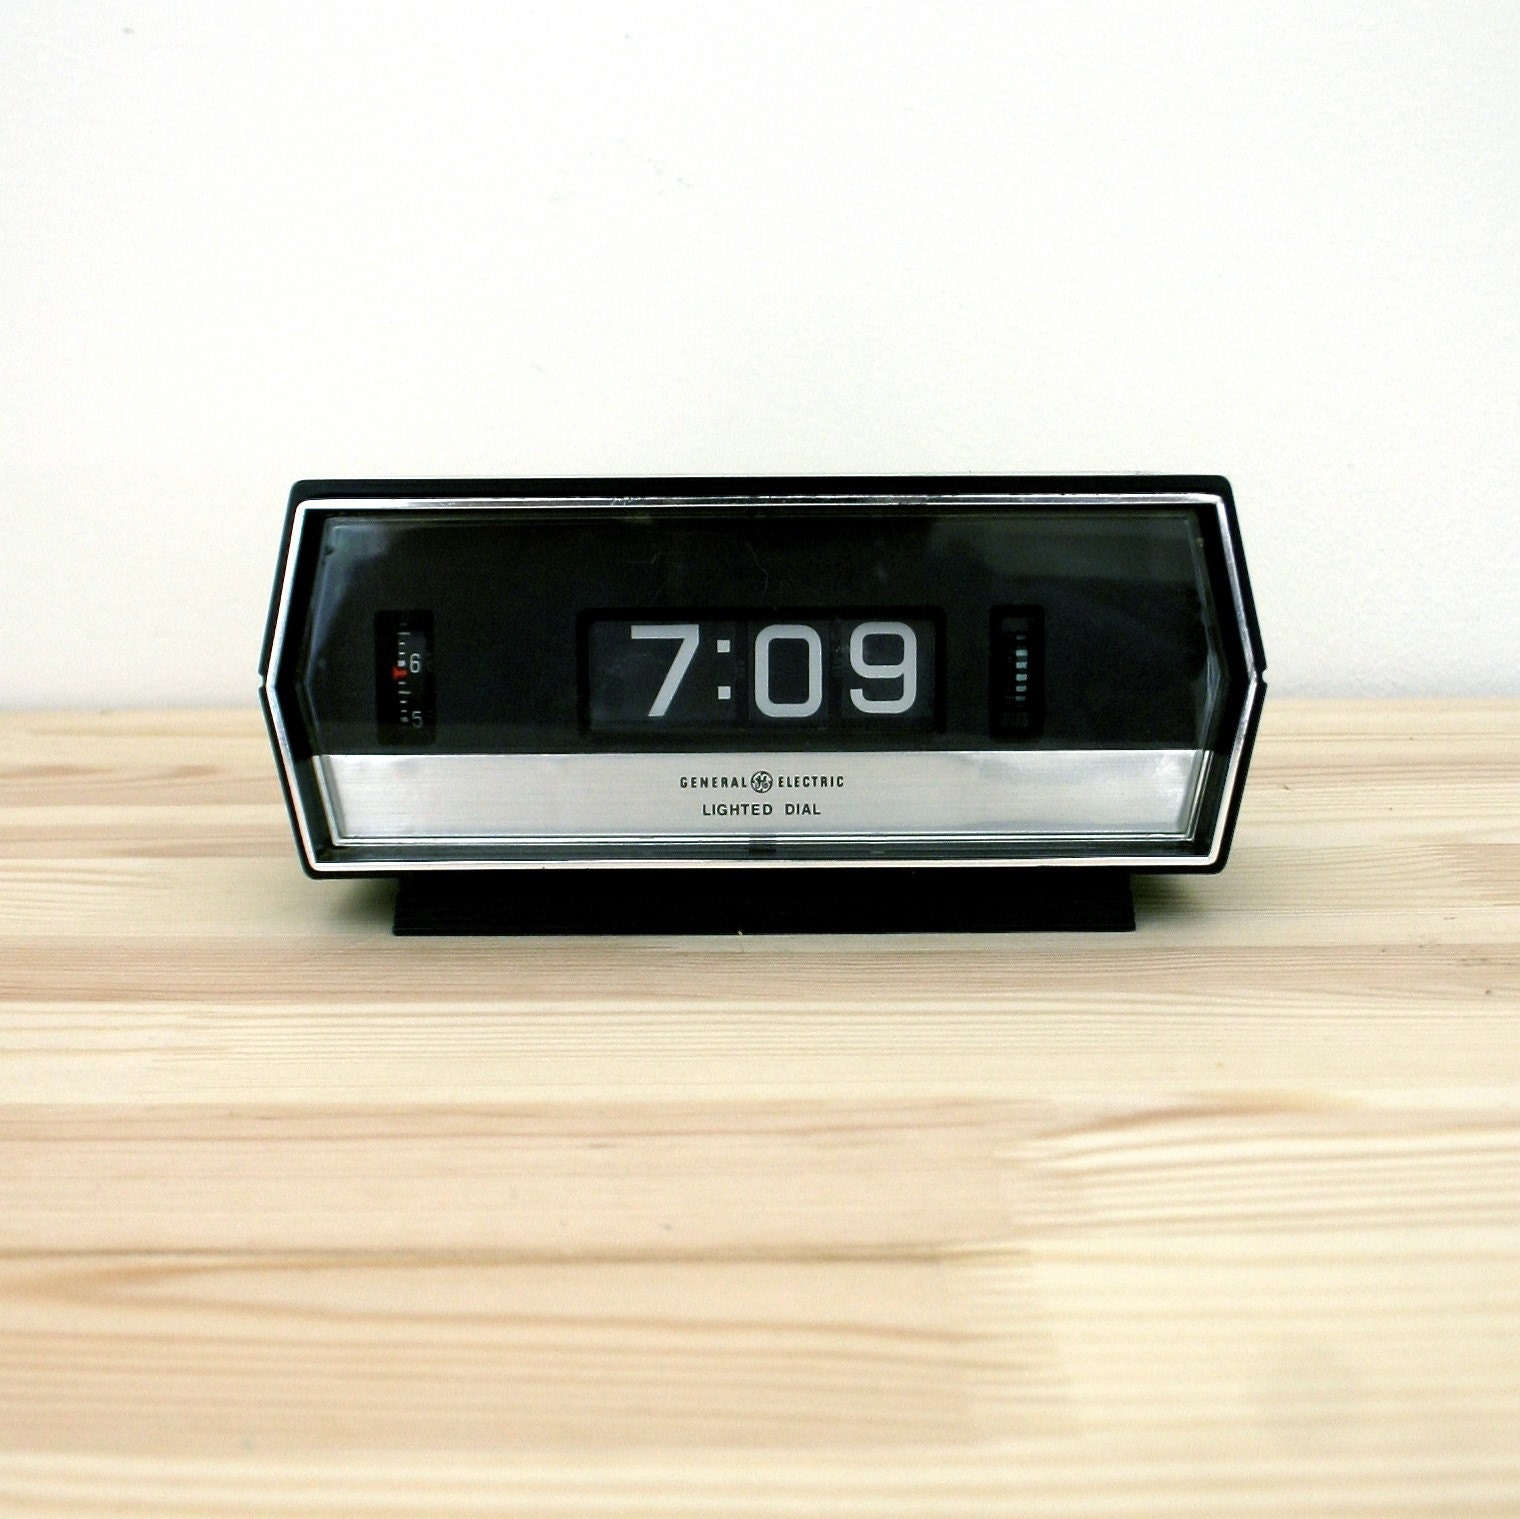 Alarm Clock Vintage